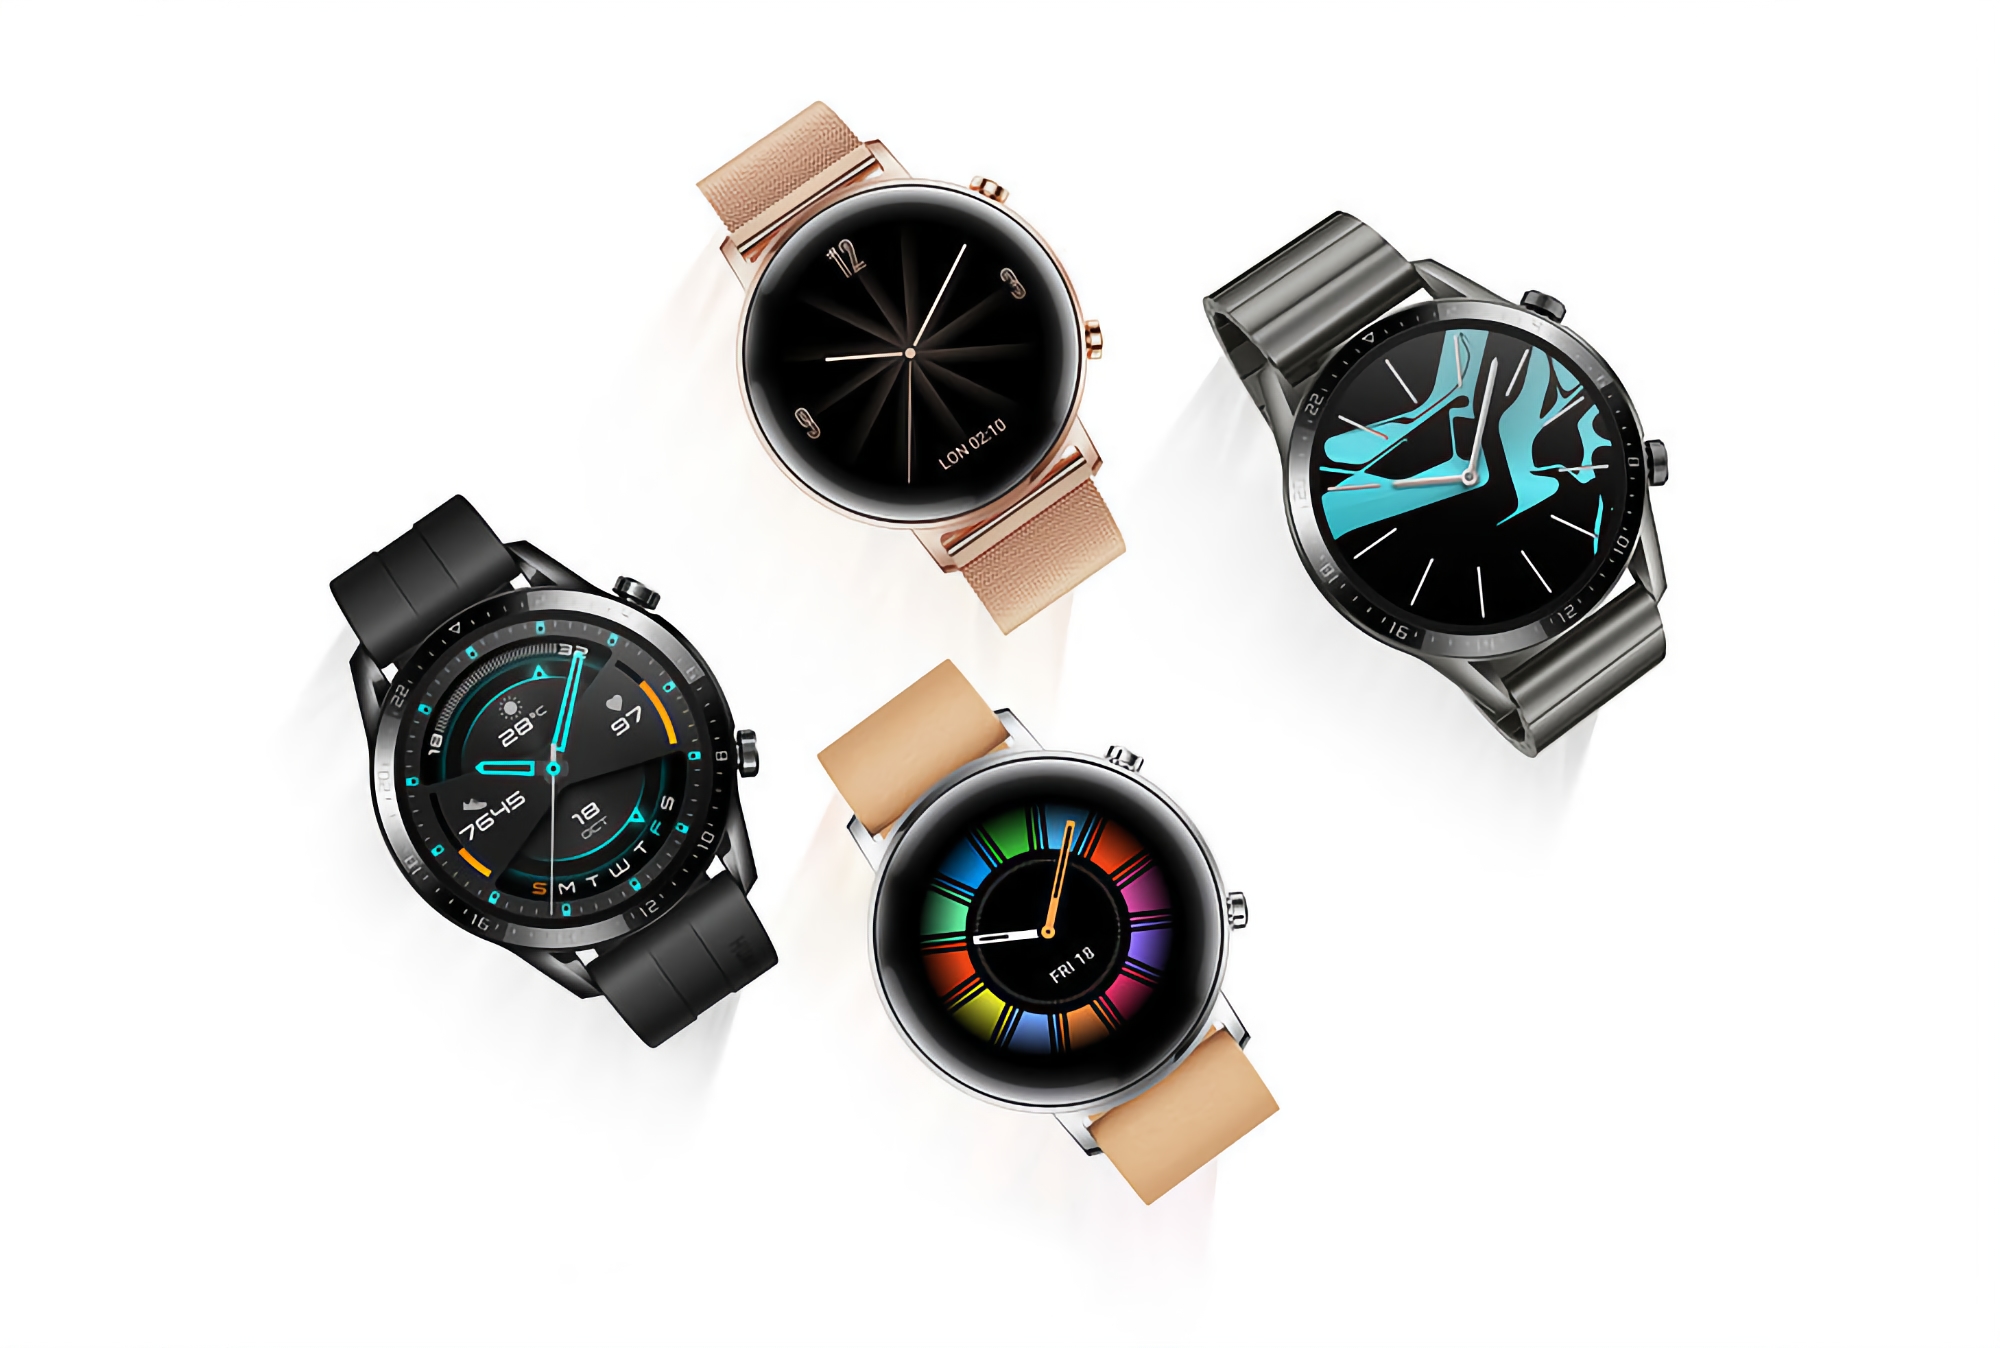 La Huawei Watch GT 2 a reçu la mise à jour 11.0.16.10 : voici les nouveautés et le délai de réception de l'OTA.